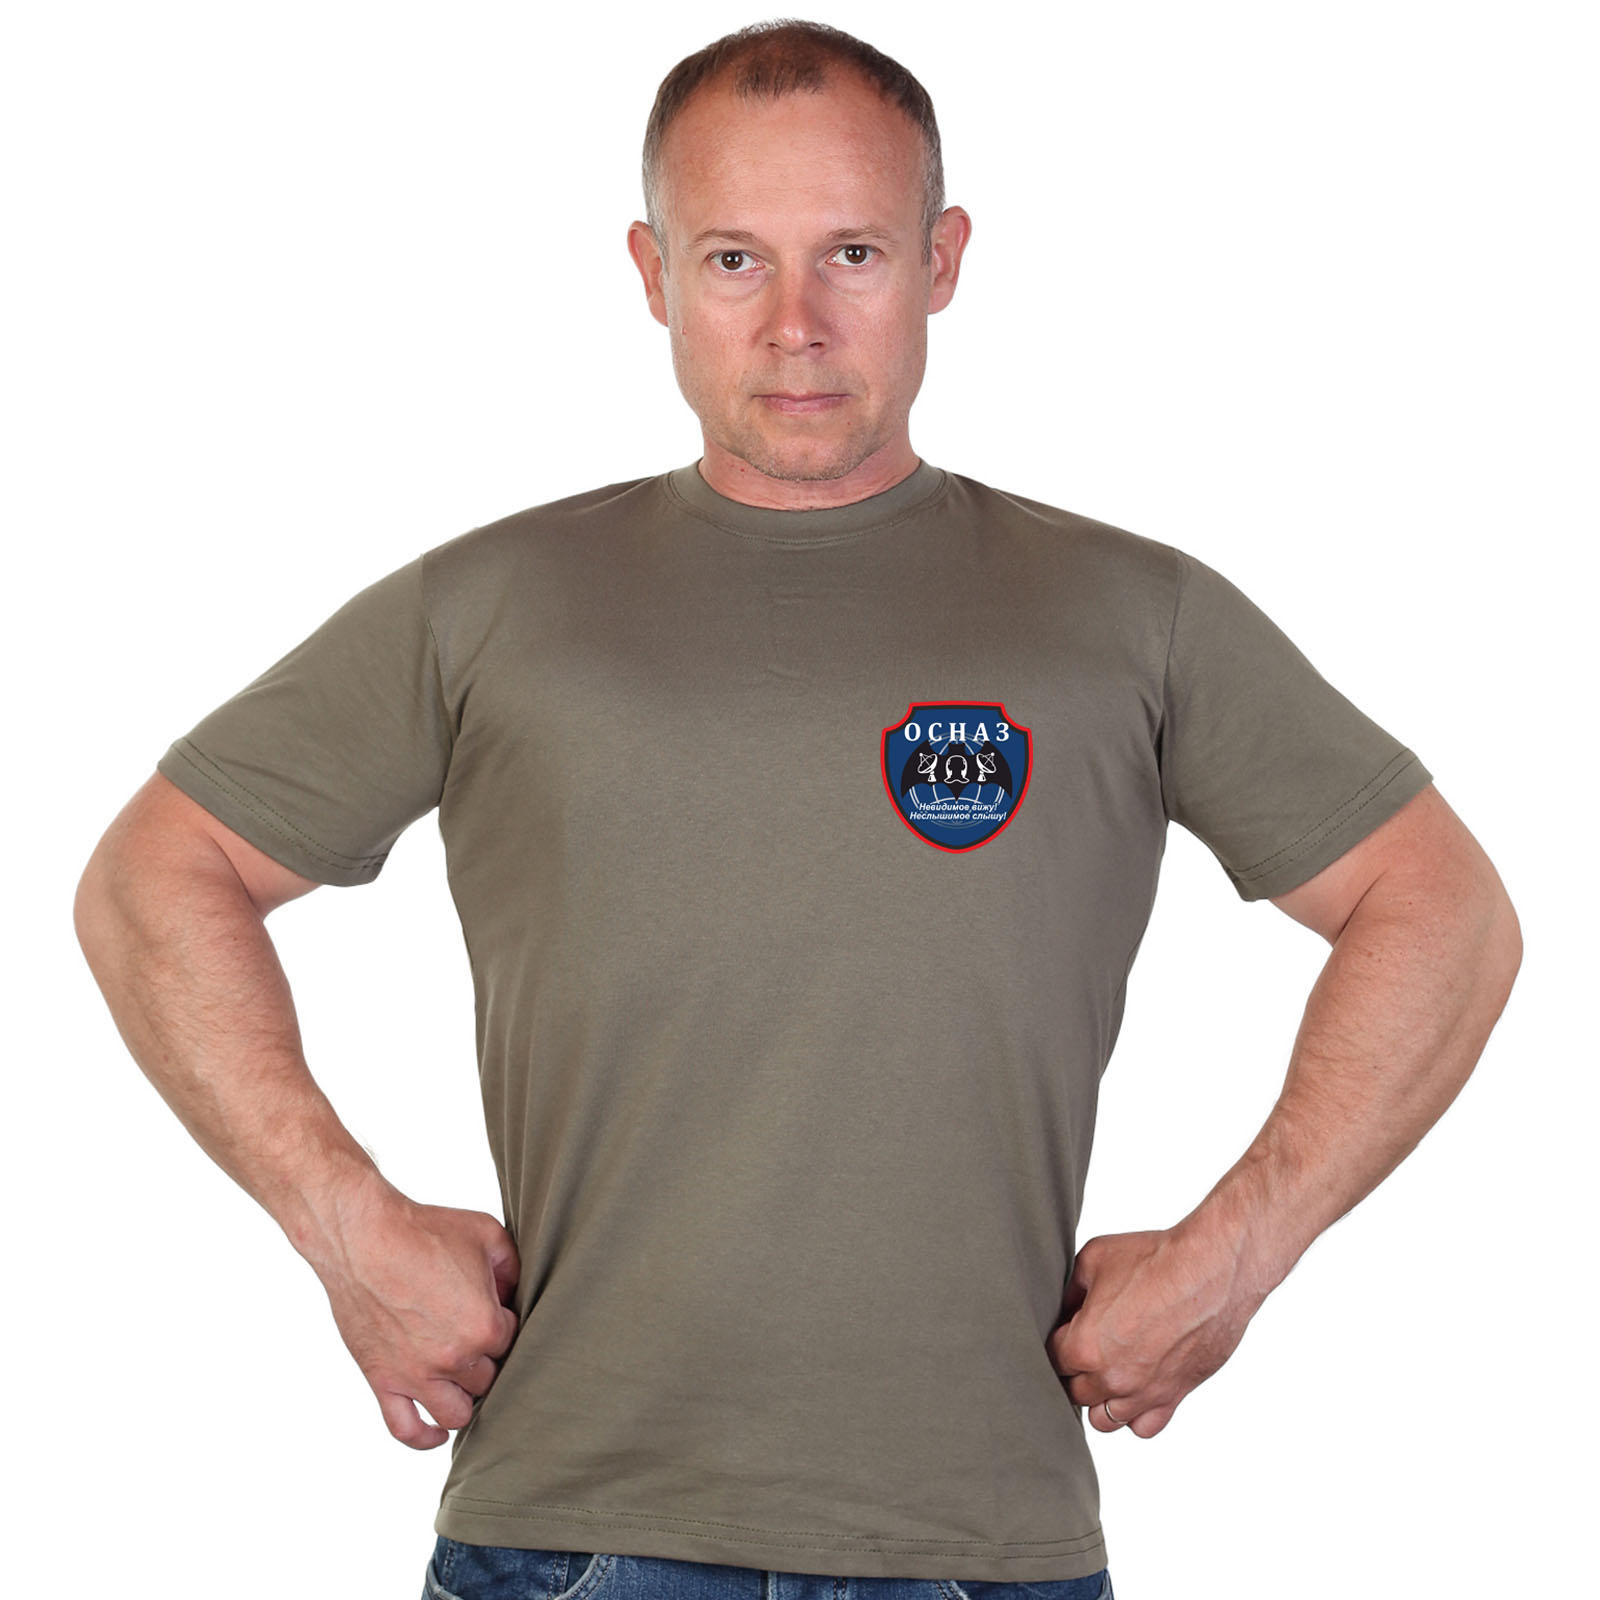 Оливковая футболка с термотрансфером "ОсНаз" 